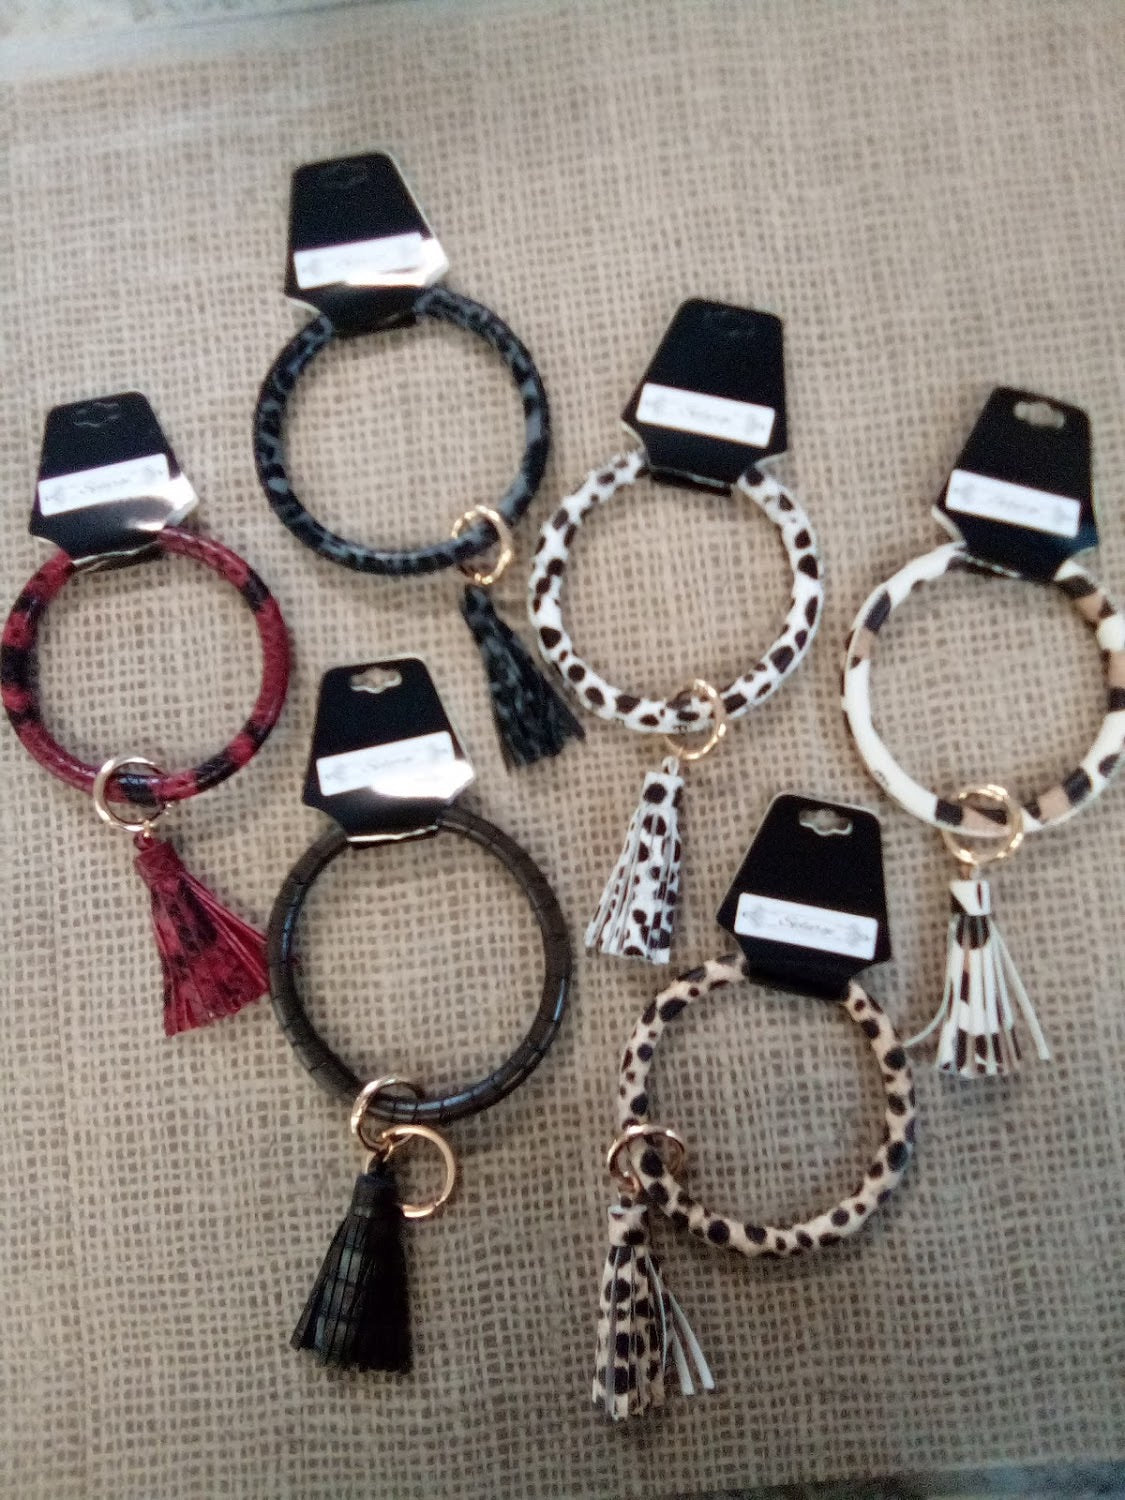 Bangle Key Bracelets